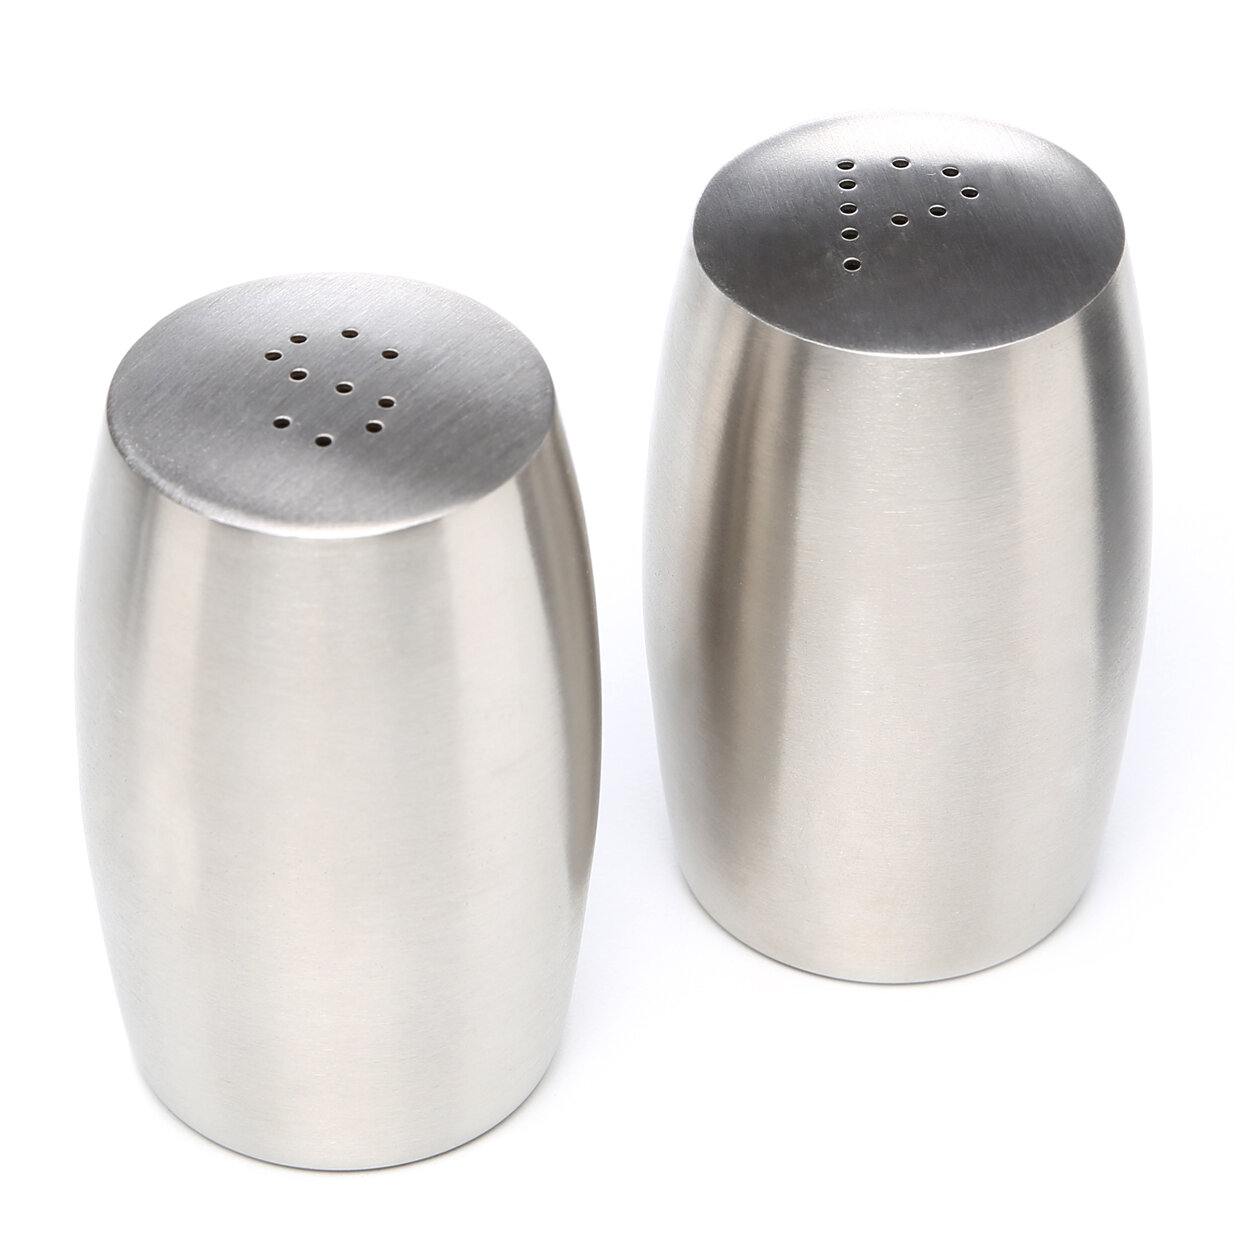 Oggi 2 Pc Ceramic Salt&Pepper Shaker Set W/ Stainless Steel Tops 6” Black New